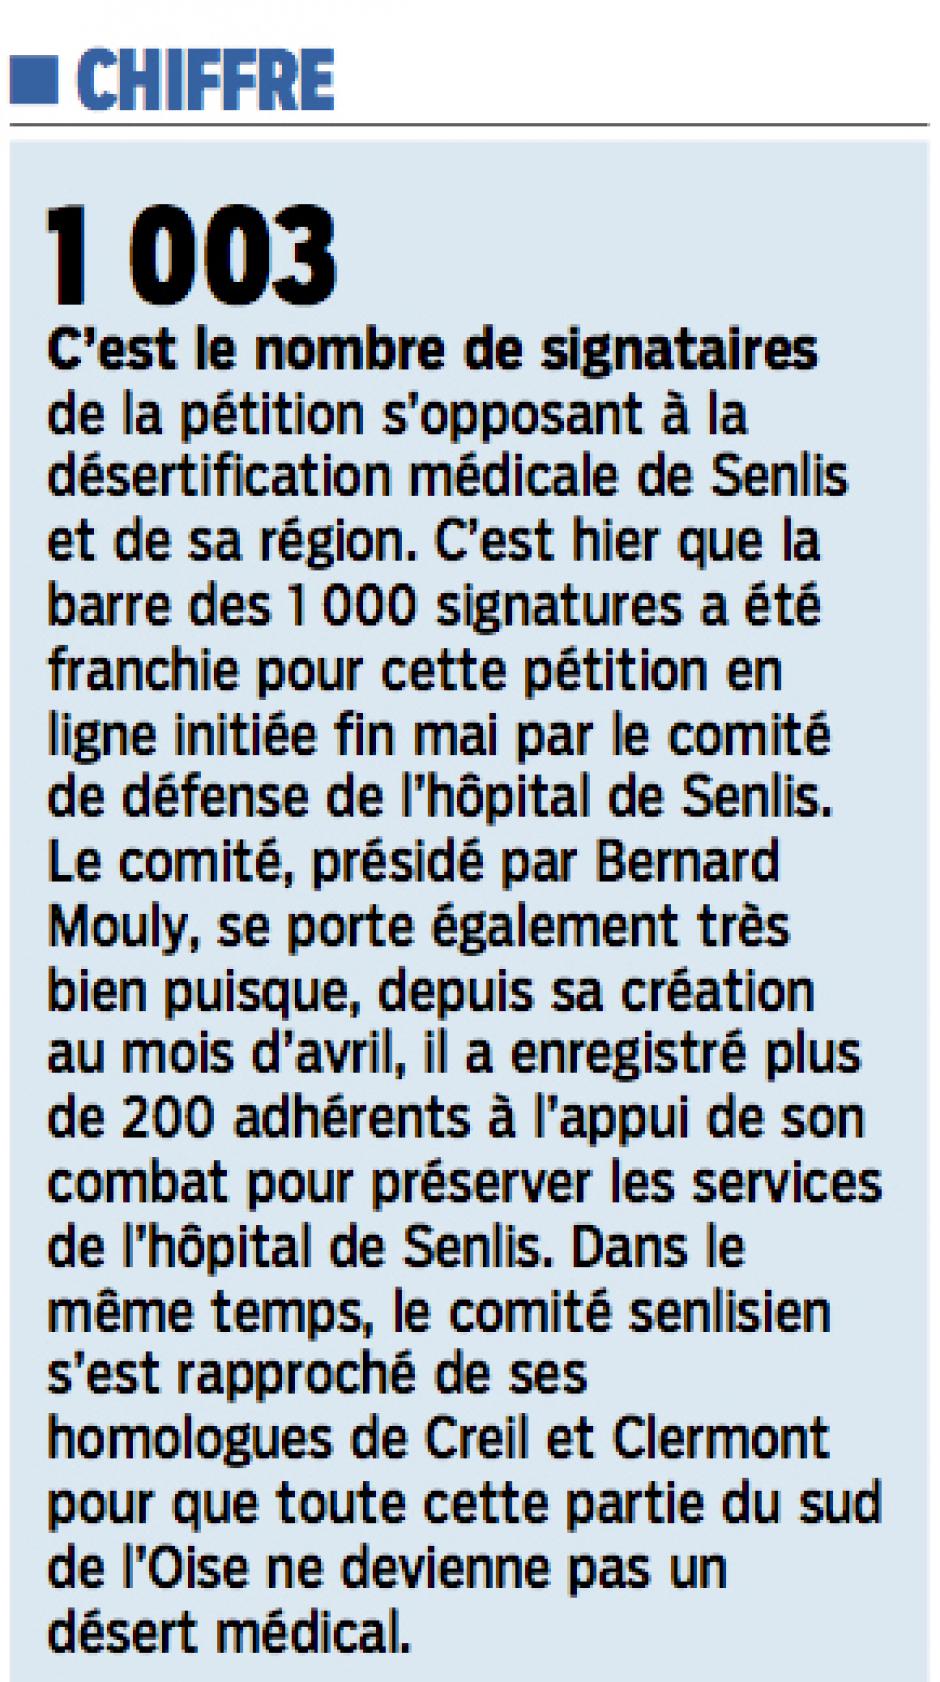 20150718-LeP-Senlis-1 003 signataires de la pétition s'opposant à la désertification médicale